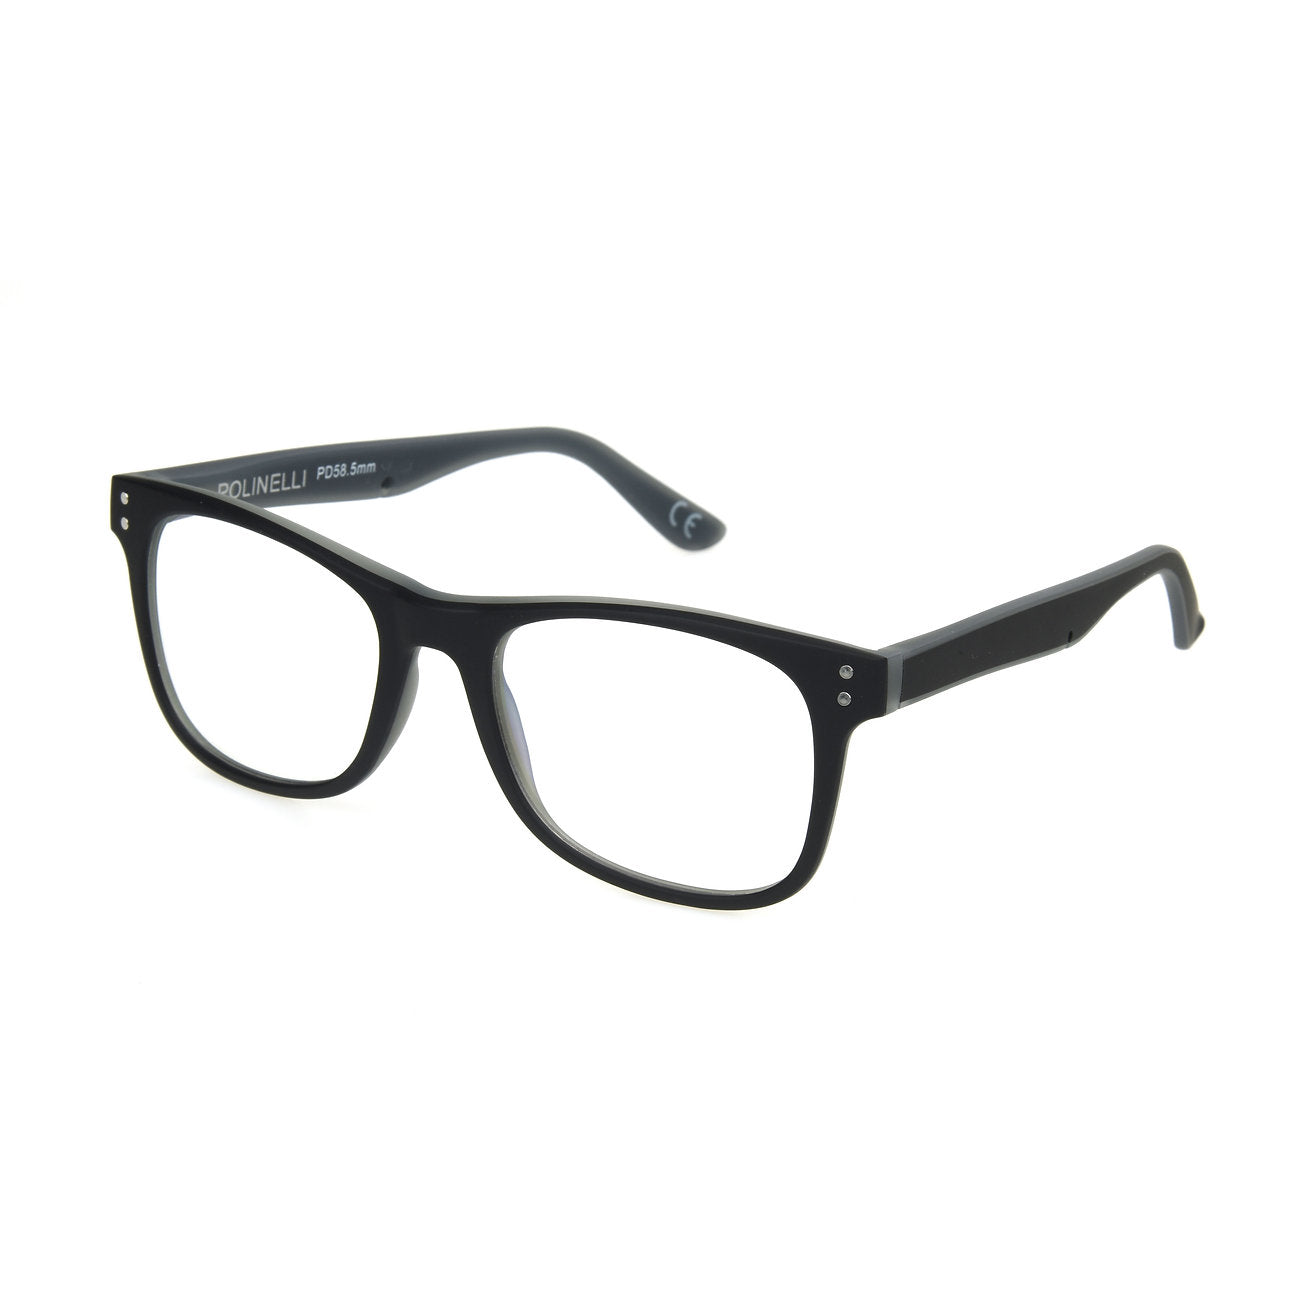 Polinelli eyeglasses model P303 gray